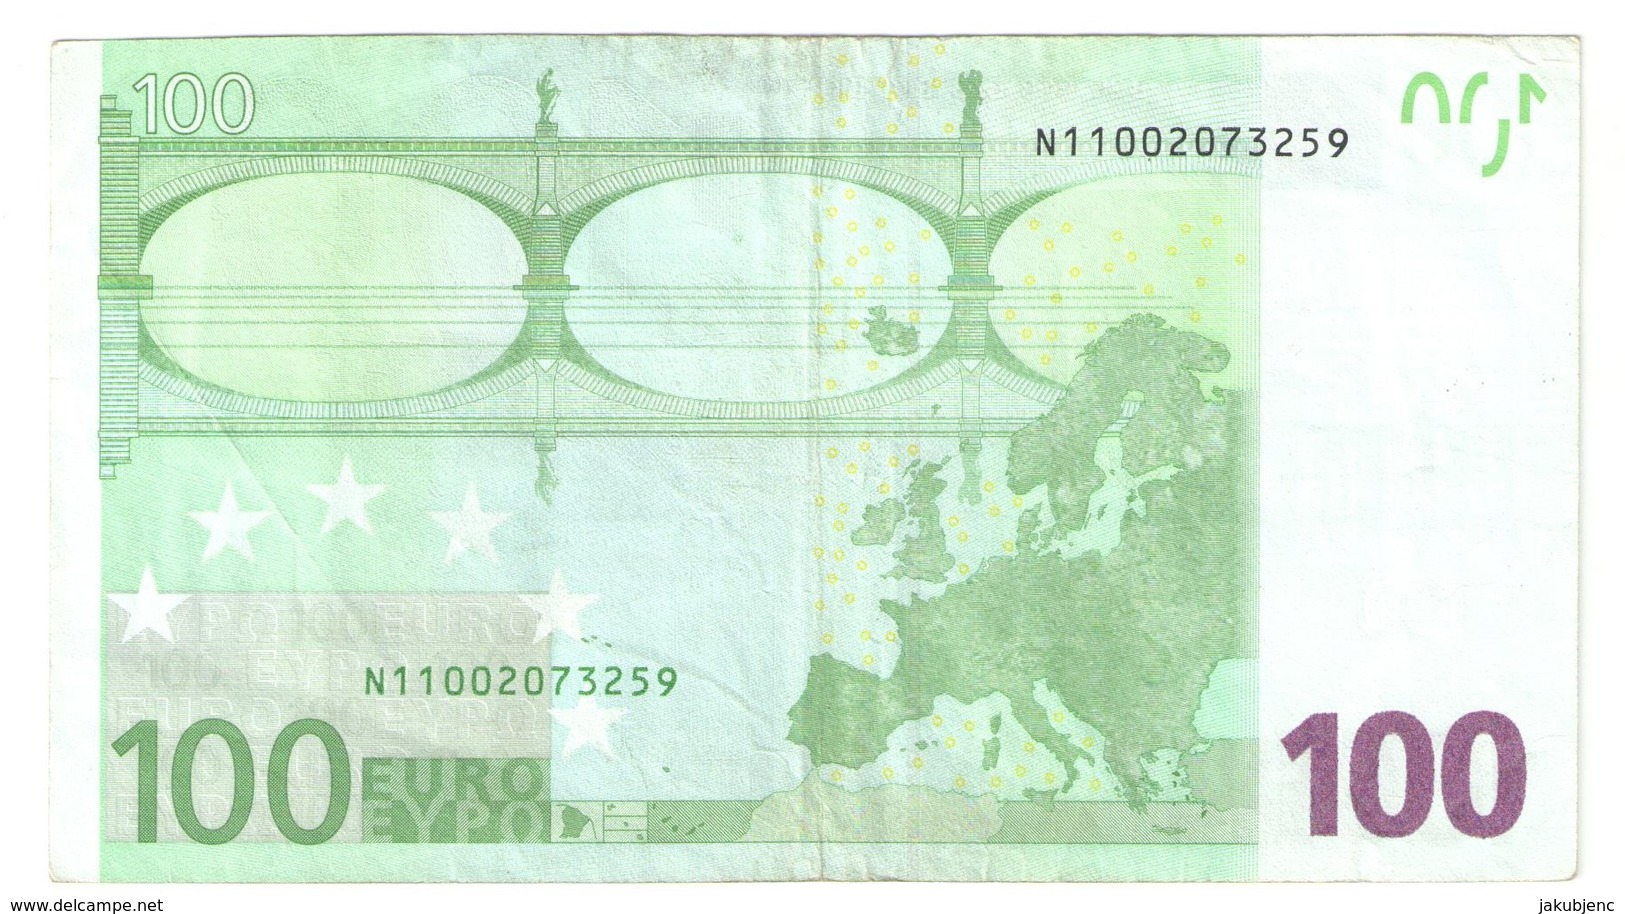 100 EURO RARE "N" F001A1! - 100 Euro